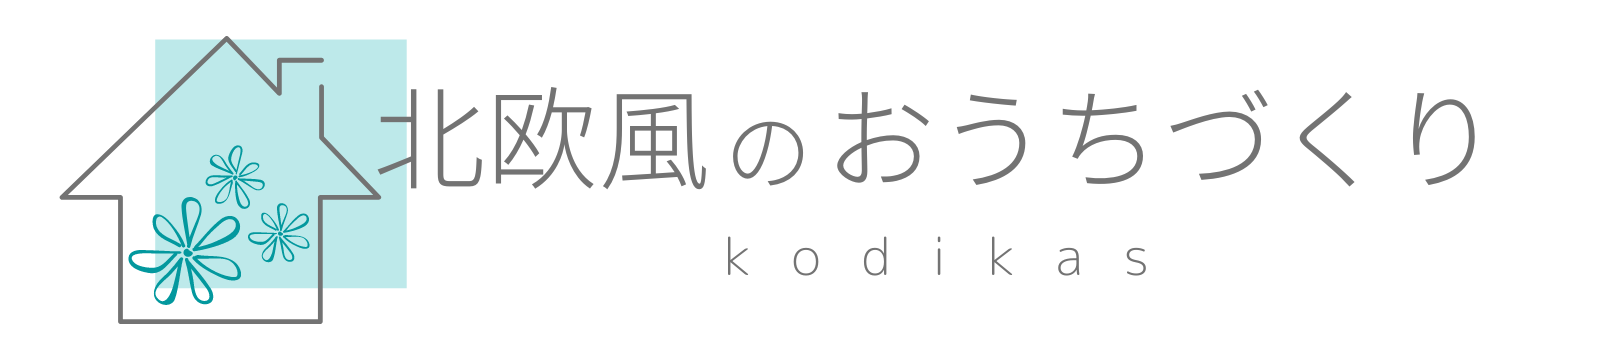 北欧風のおうちづくりブログ 〜kodikas〜